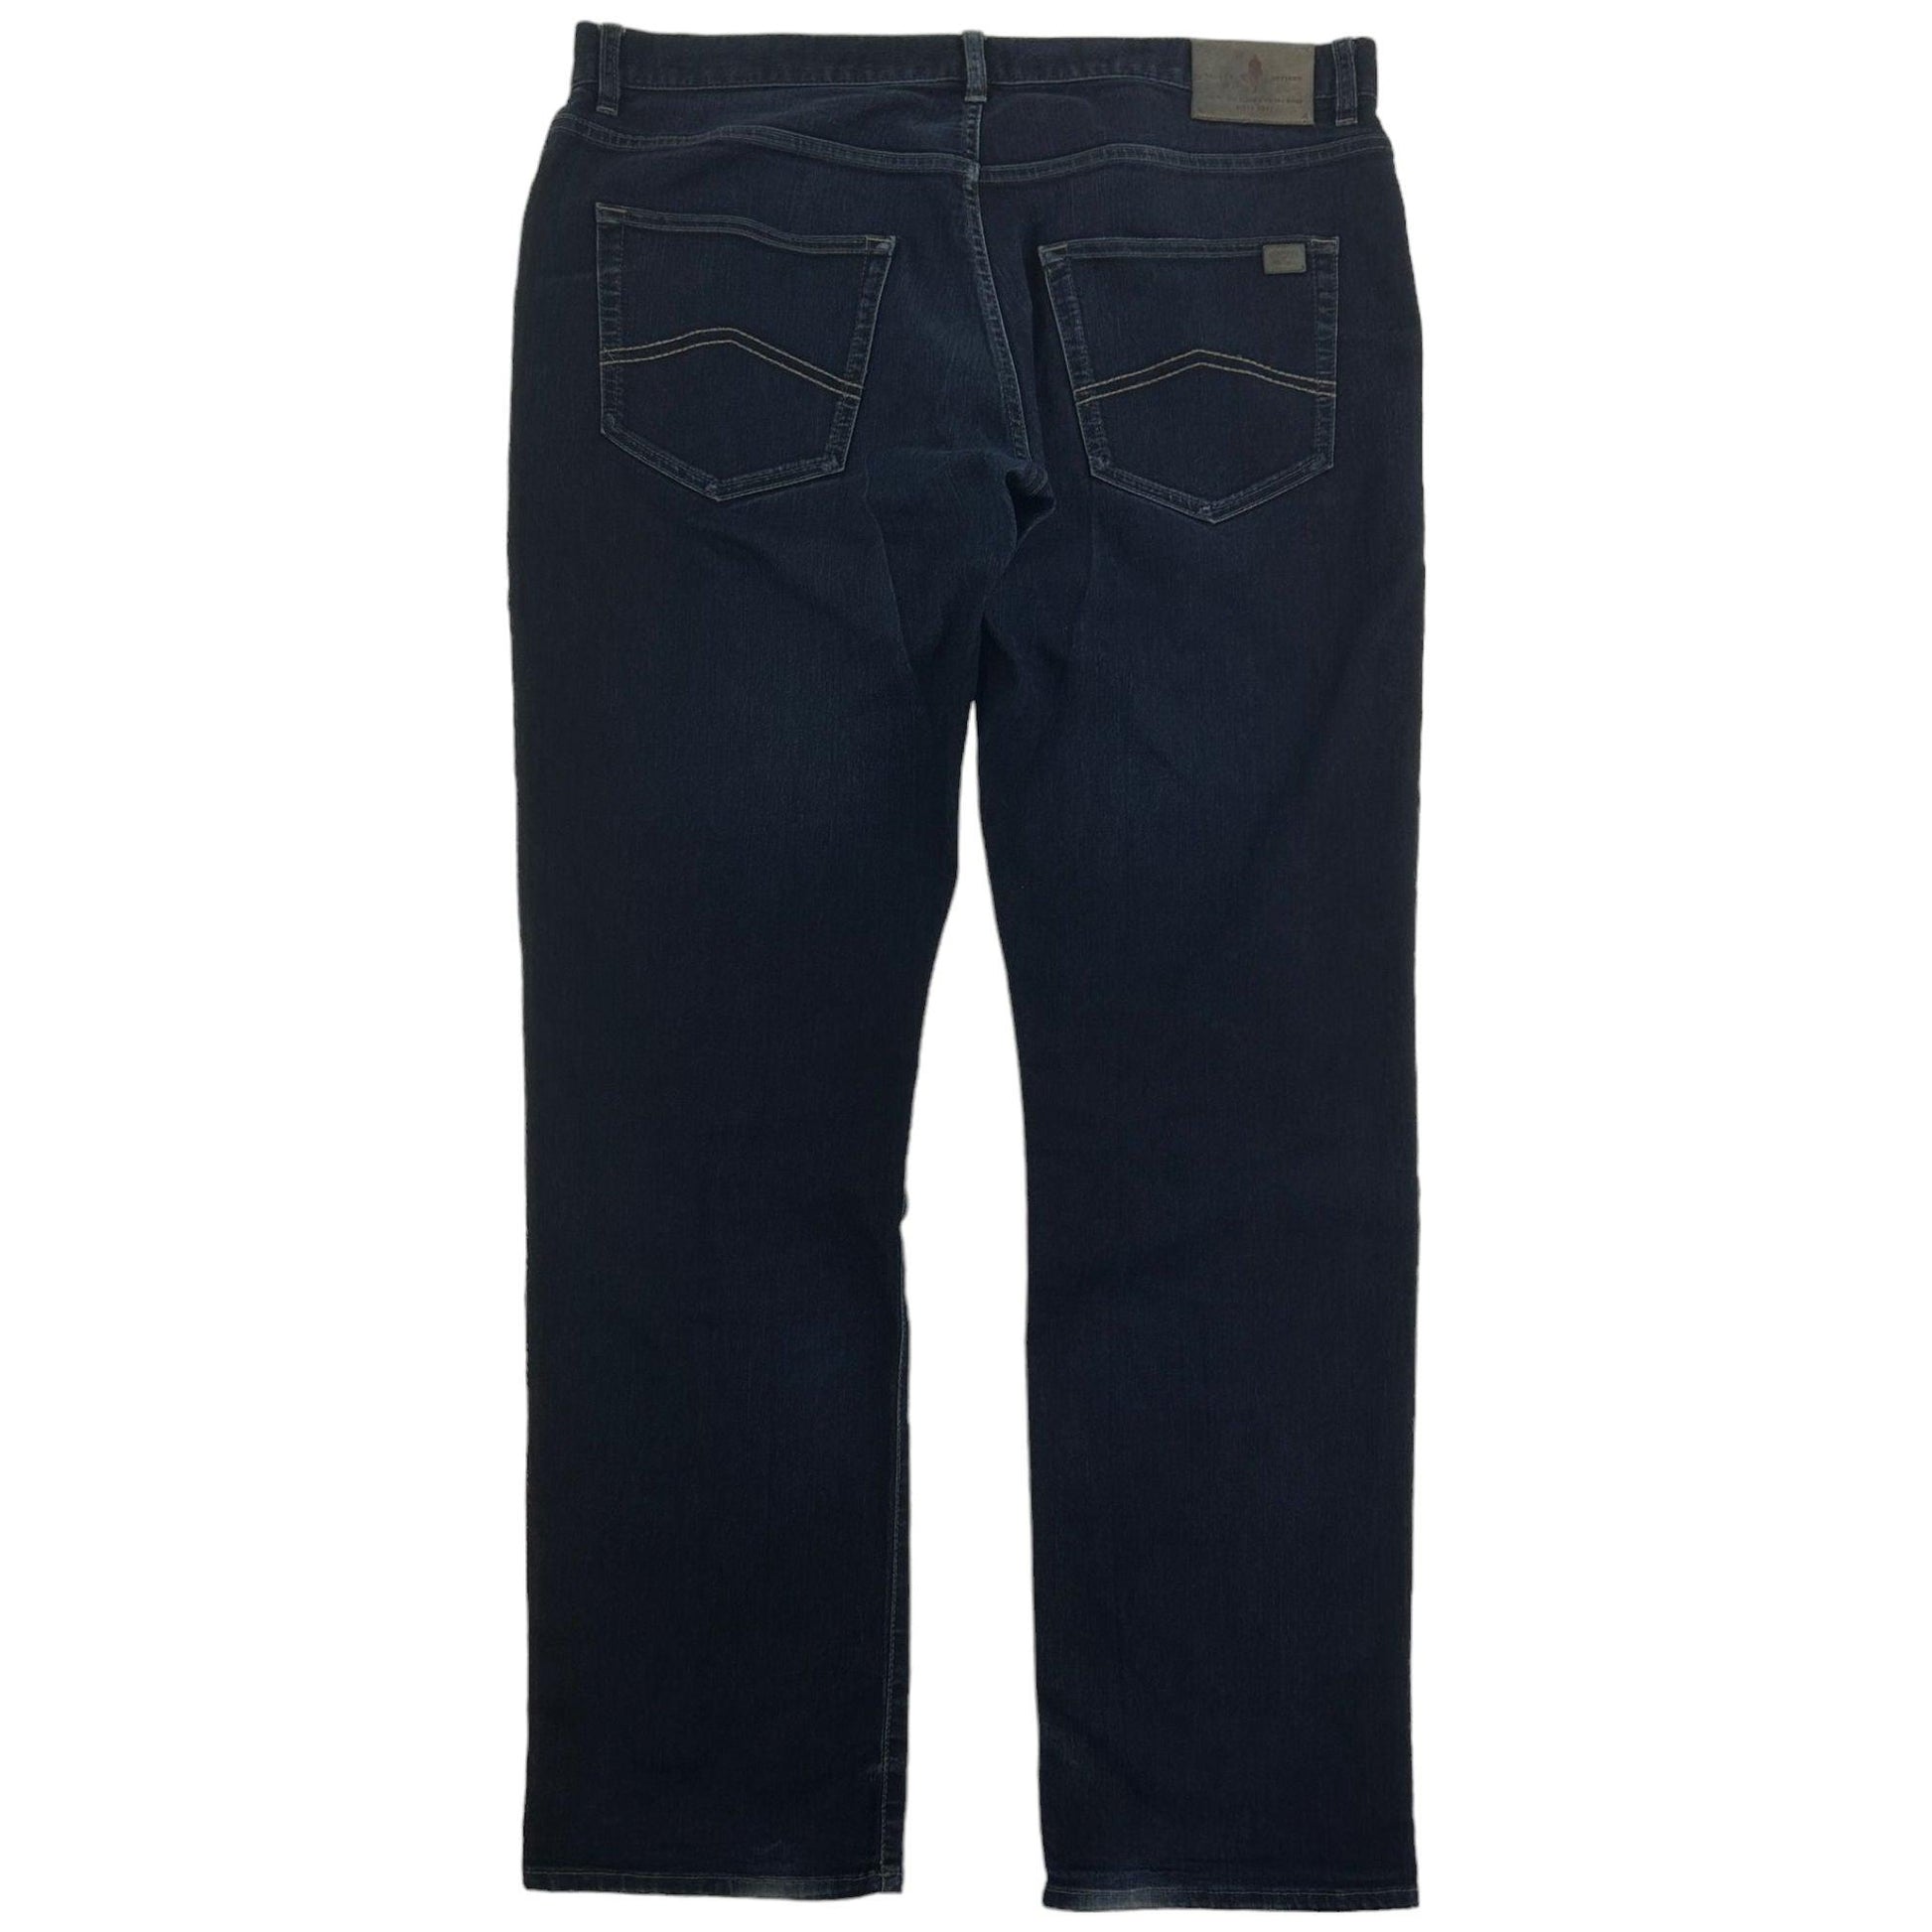 Vintage Marlboro Denim Jeans Size W40 - Known Source